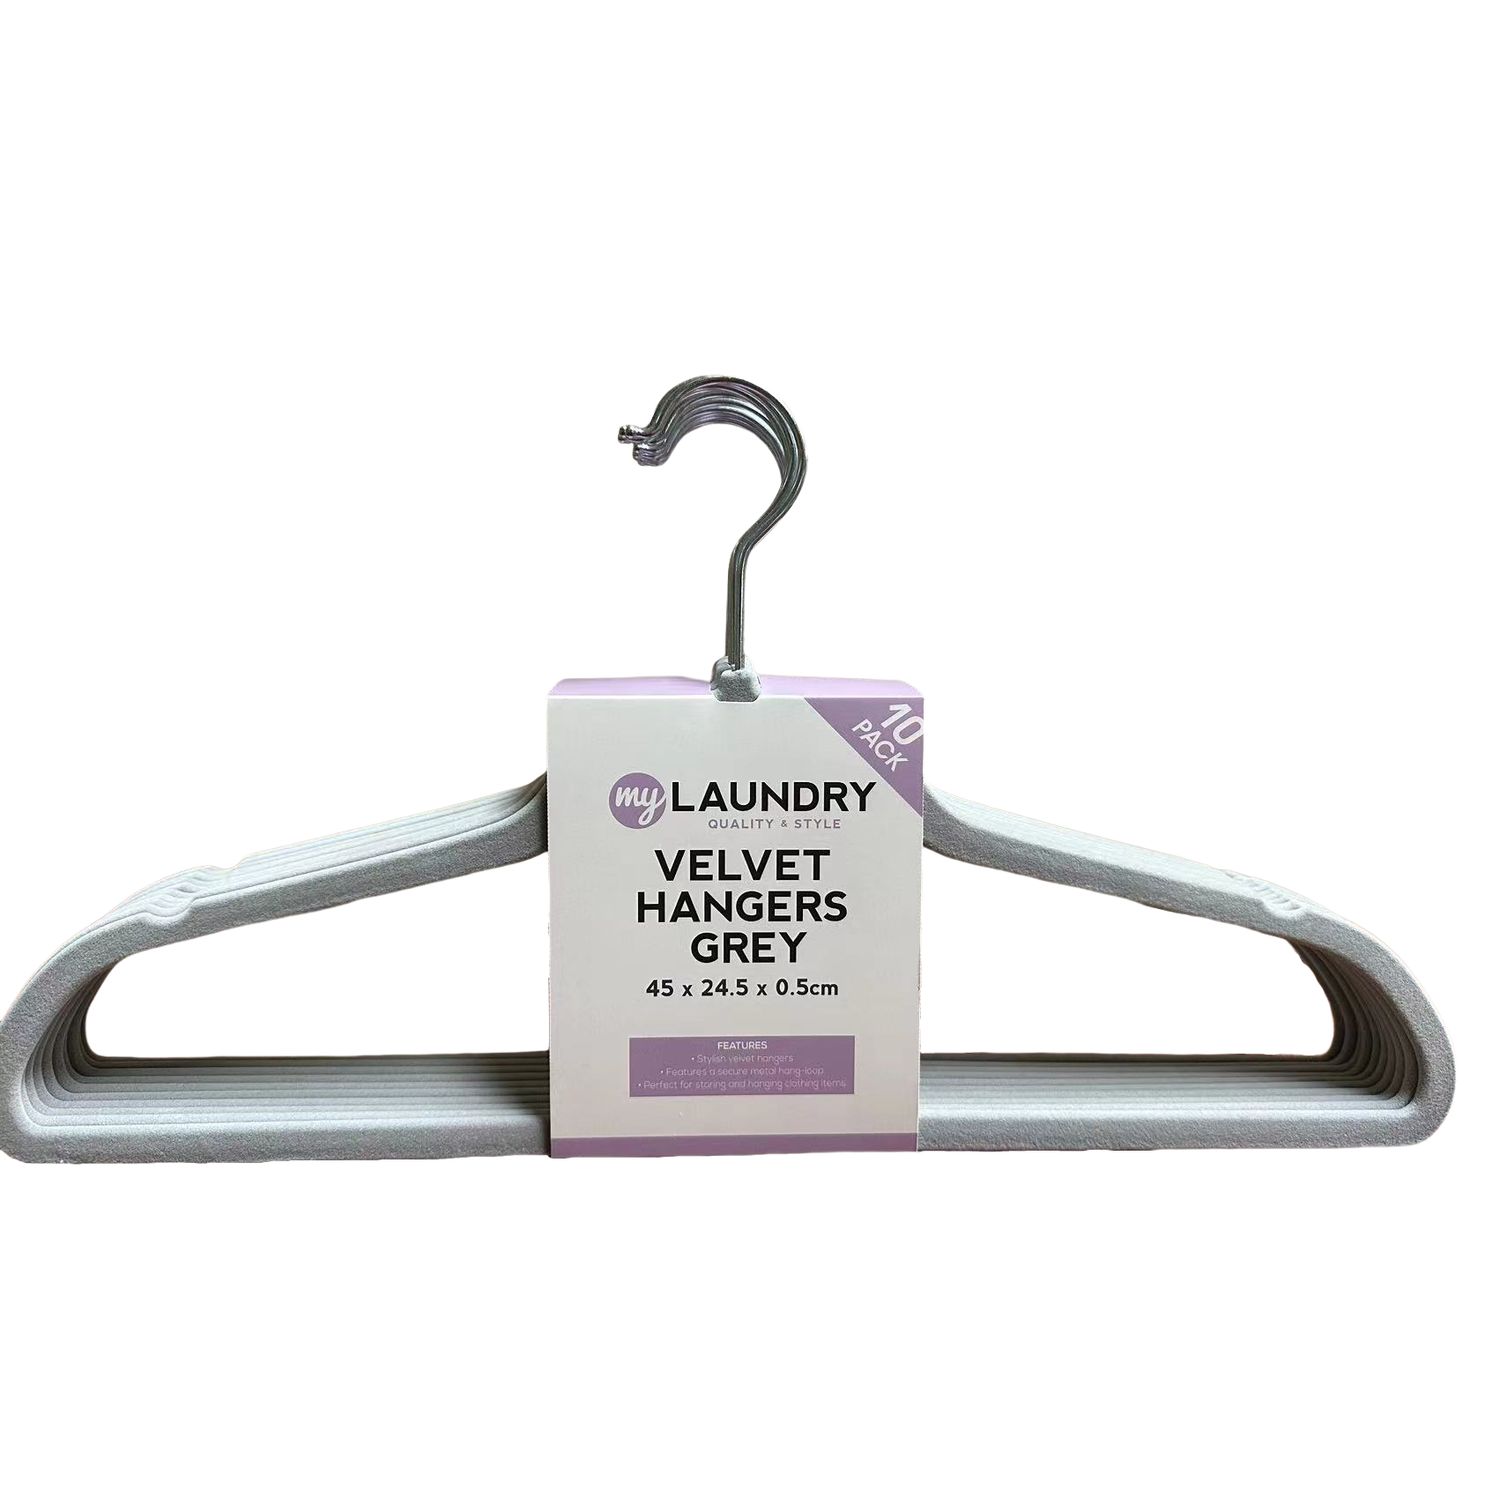 My Laundry Grey Velvet Hanger 10 Pack Image 2